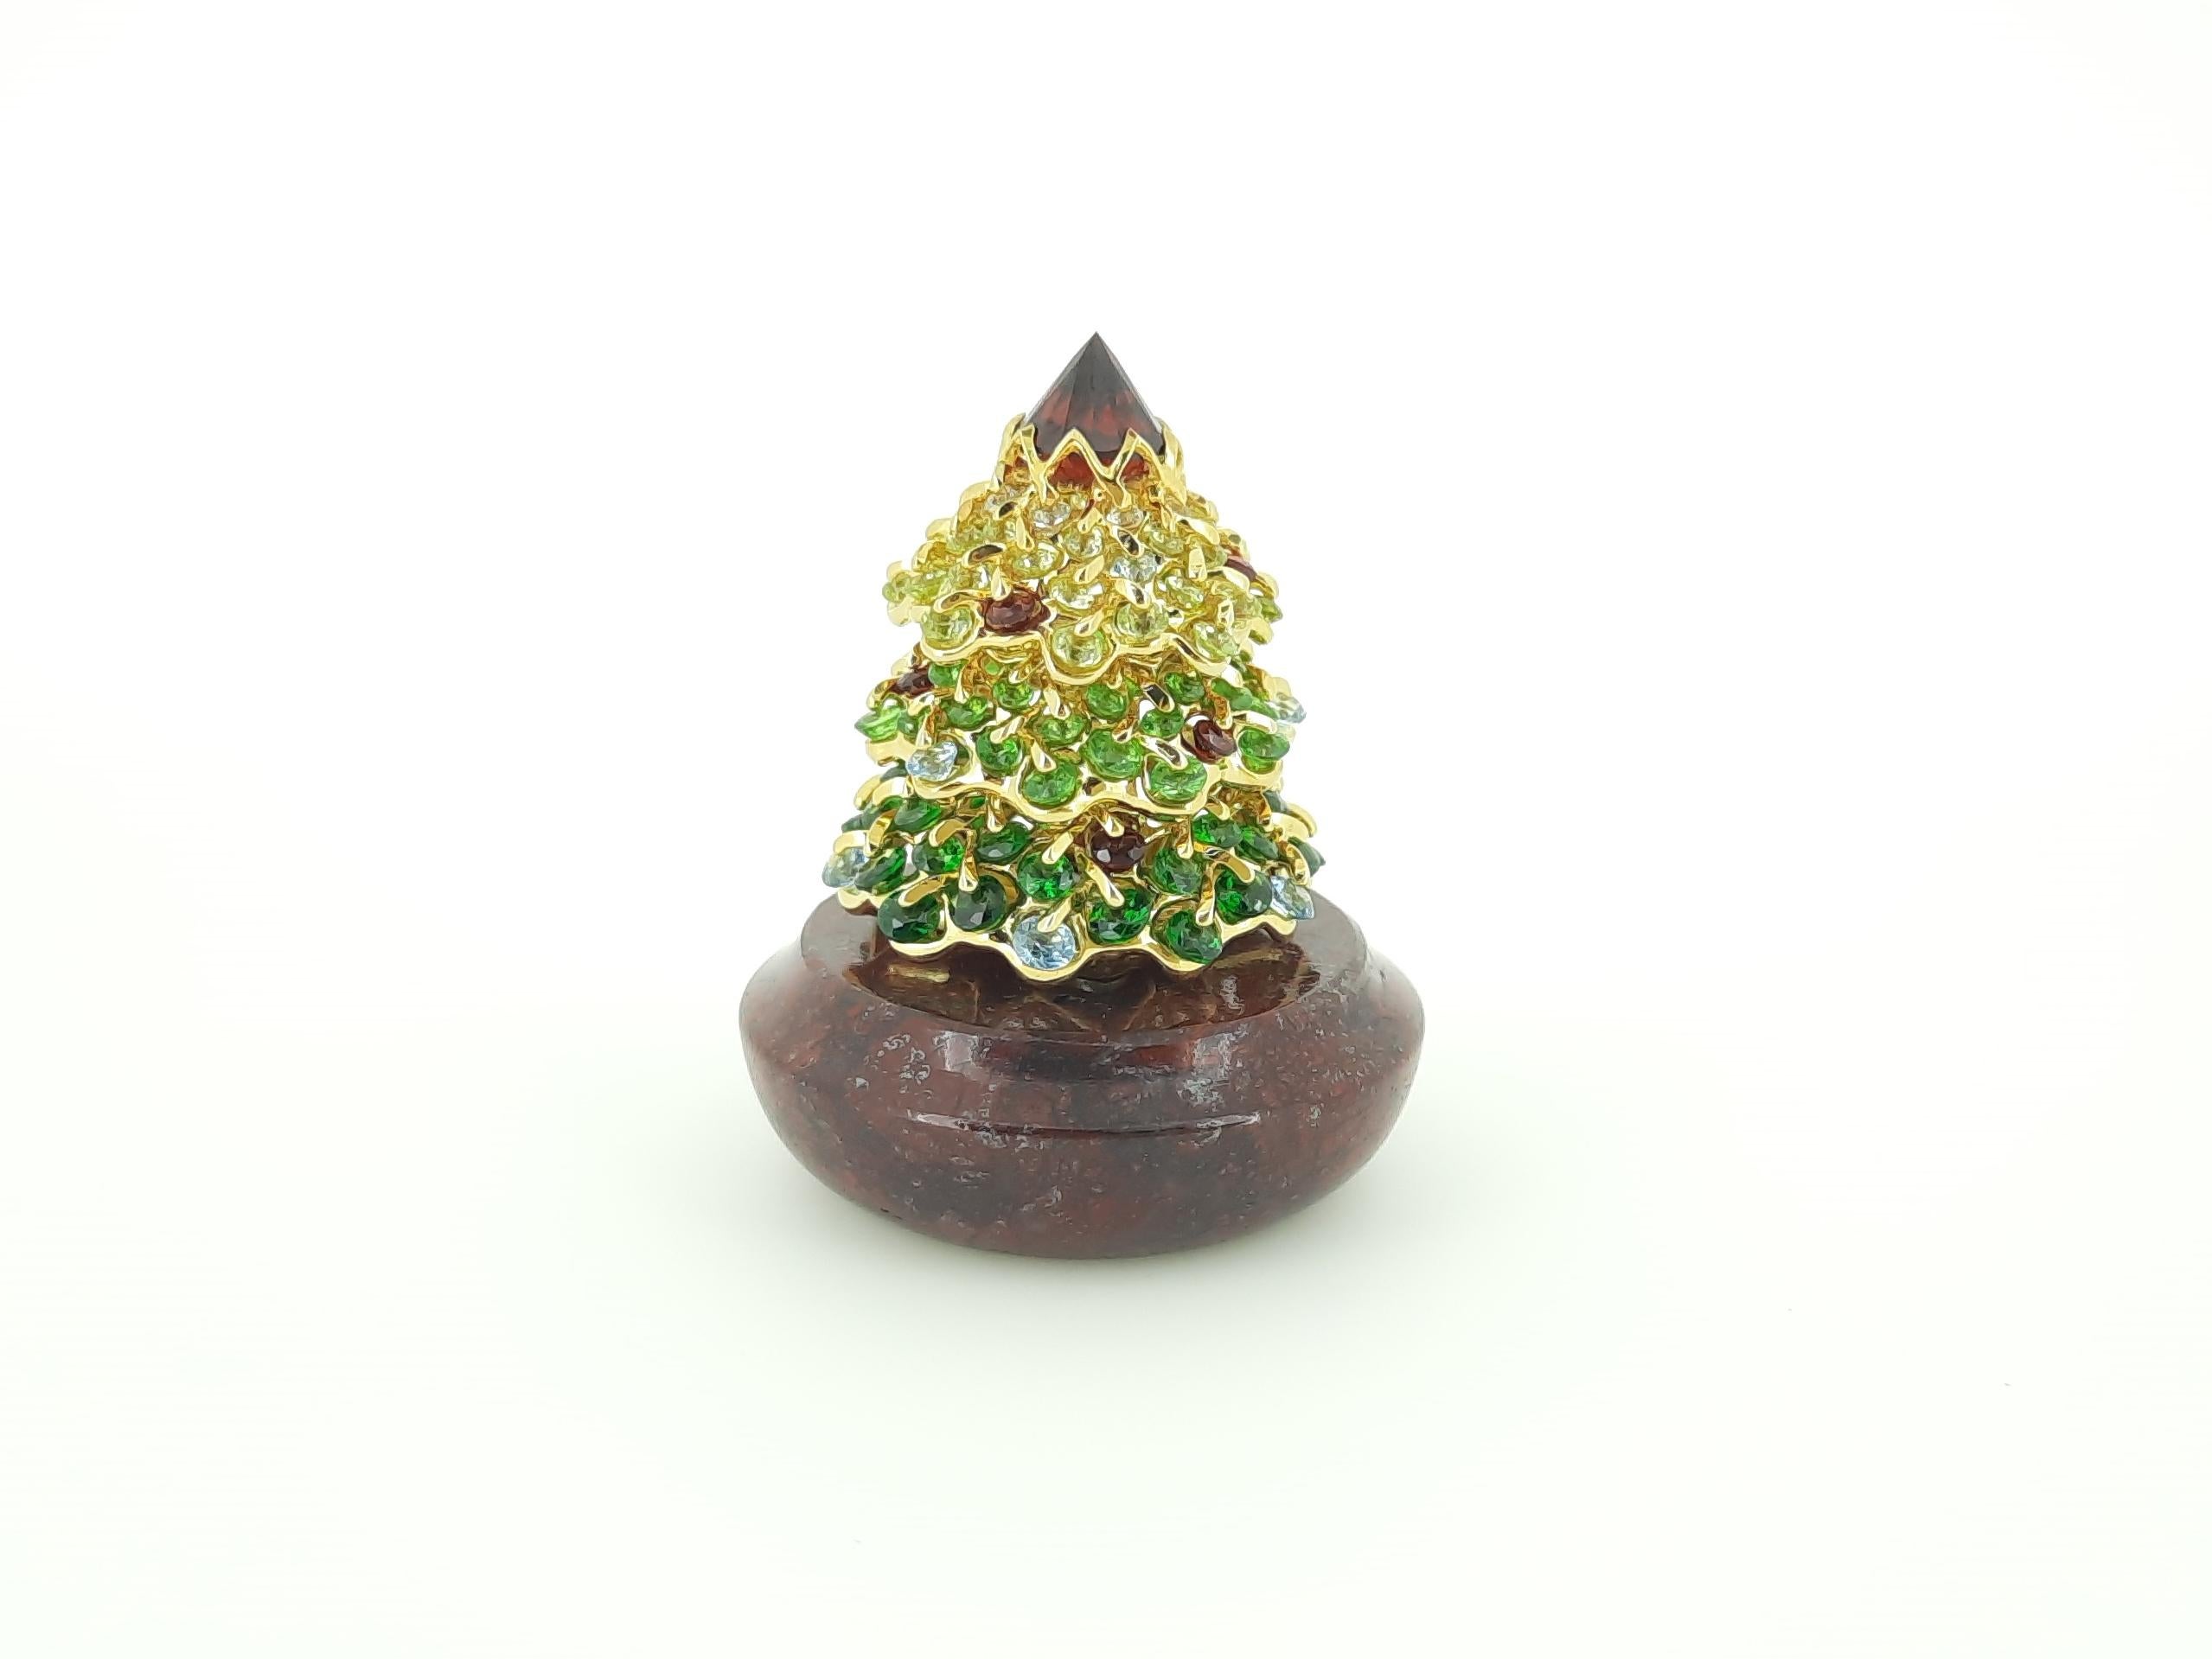 L'arbre de Noël Jewell de MOISEIKIN - une célébration envoûtante conçue pour la saison de la joie. Cet arbre exquis, plaqué argent à la perfection, est un accessoire de bureau raffiné, doté d'une base magnétique, ingénieusement conçue comme un